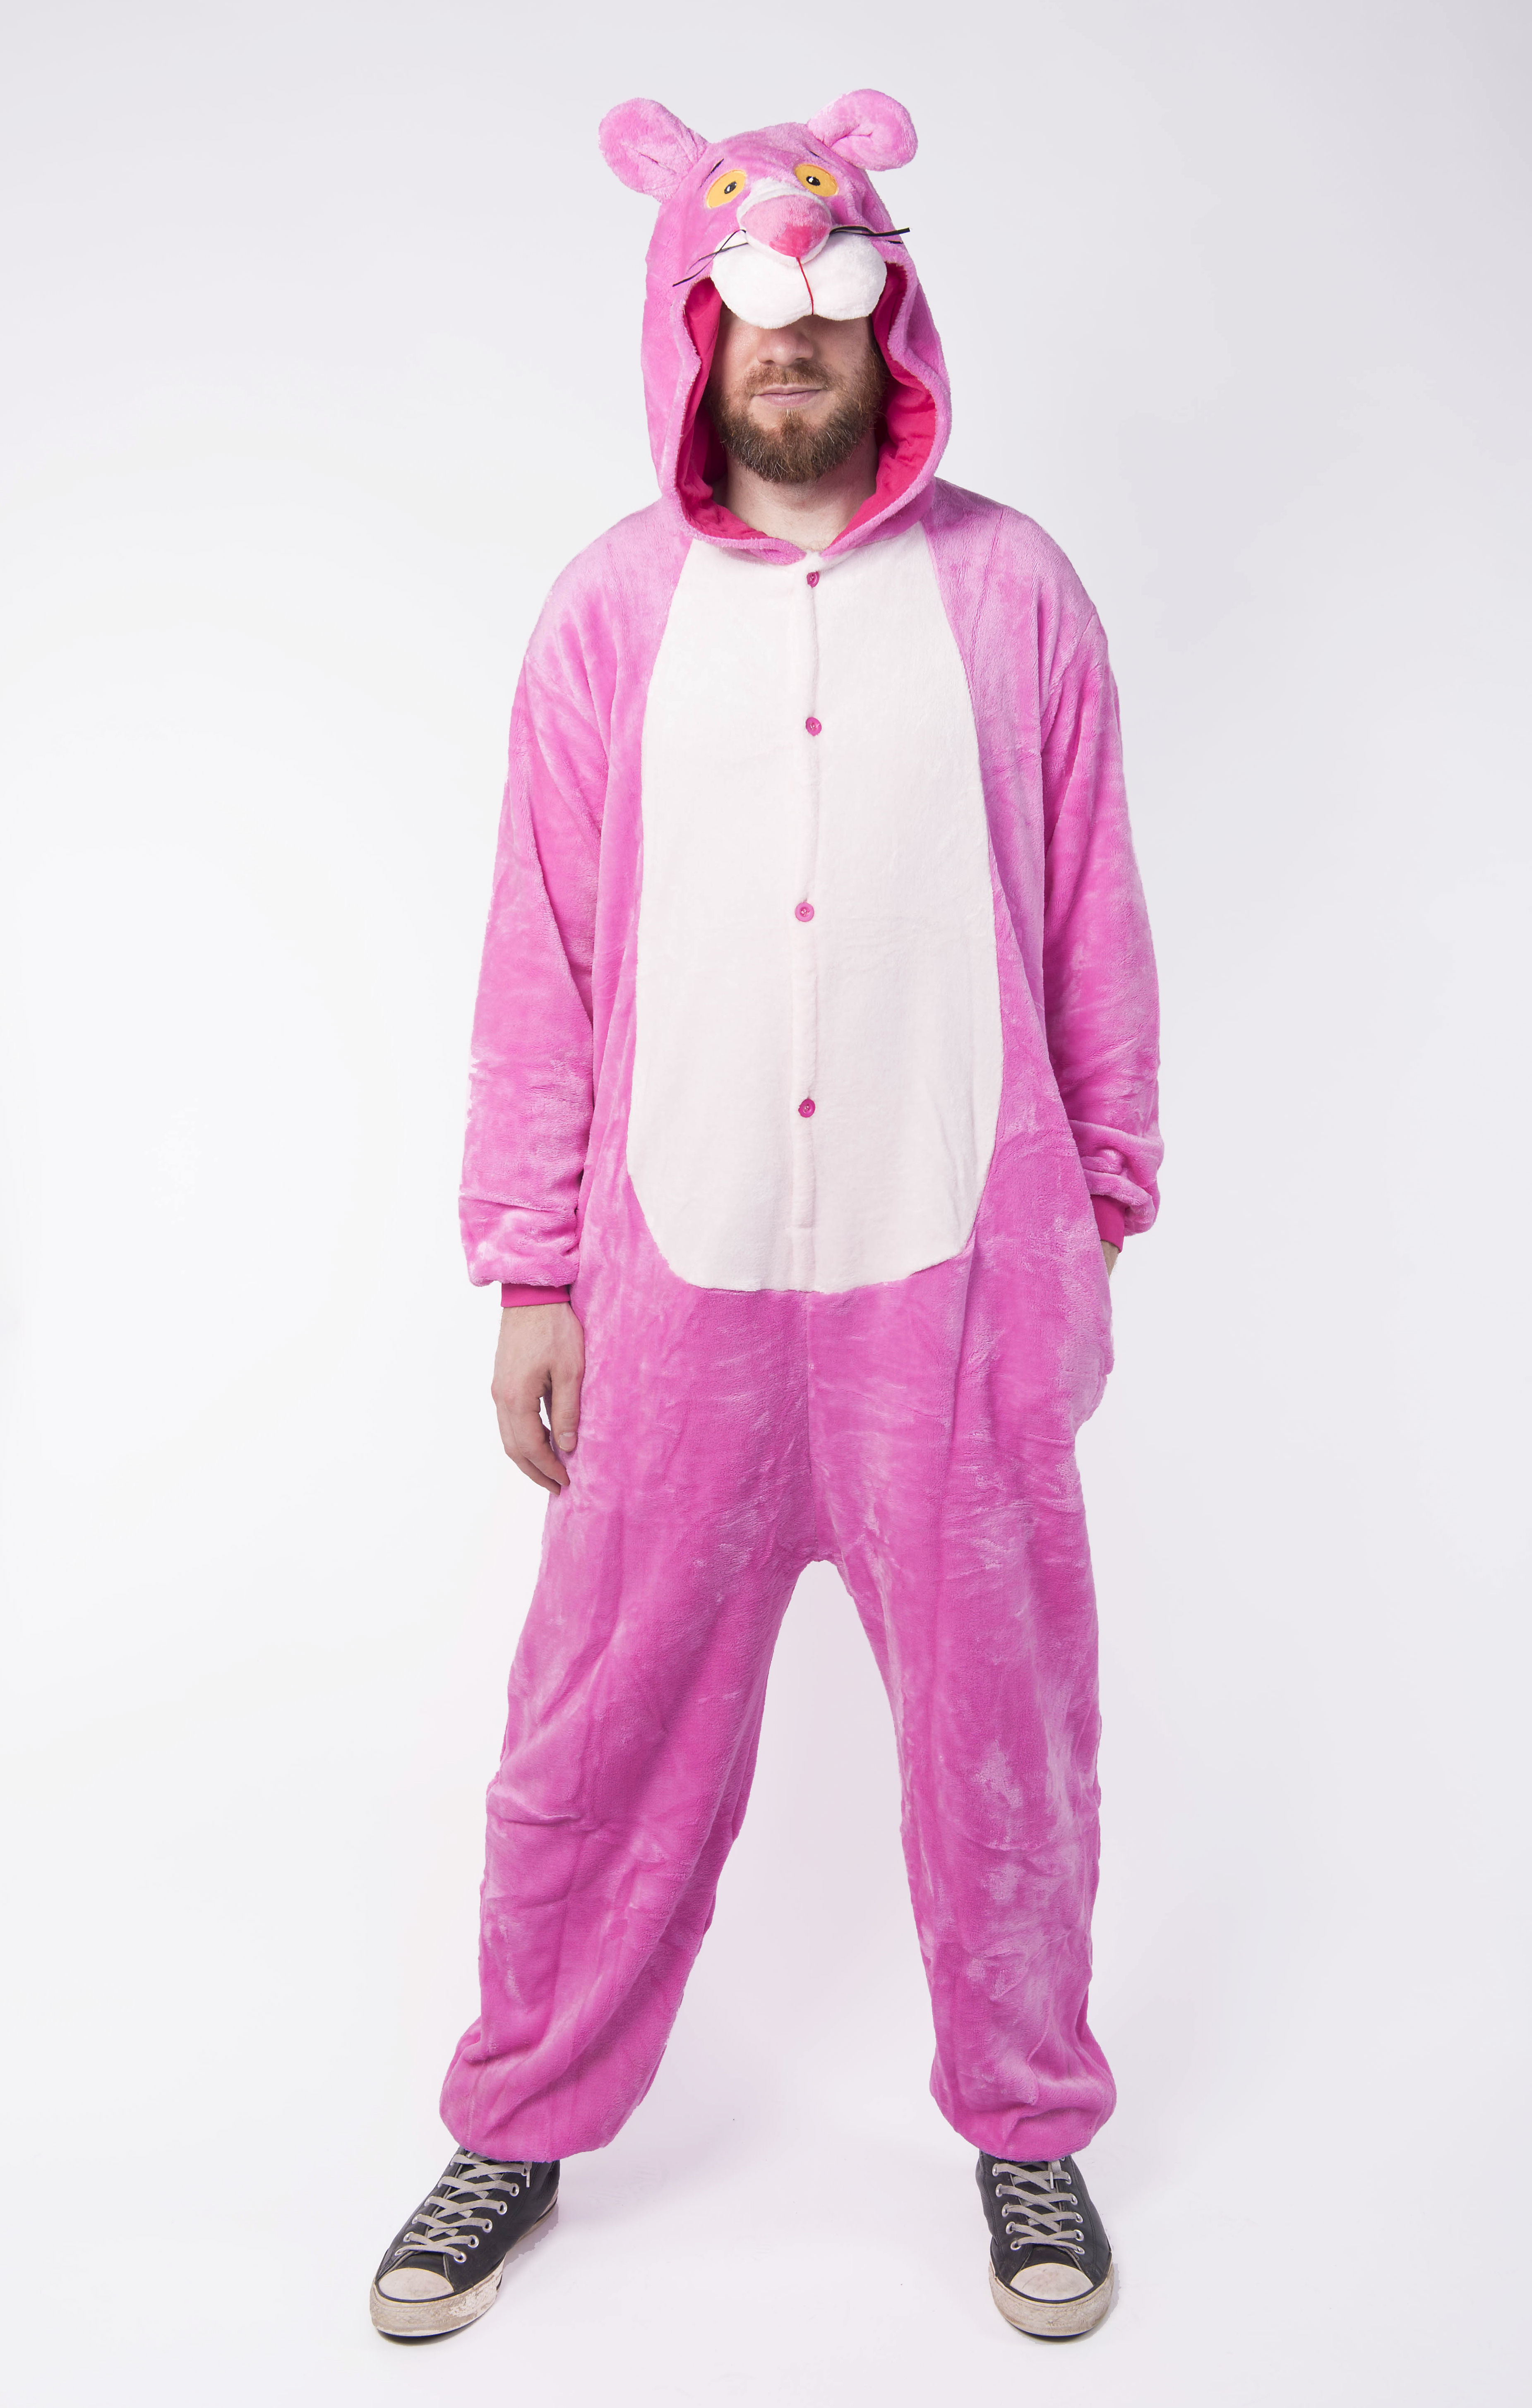 Buy your Pink Panther kids onesie now! - PartyinyourAnimal.com